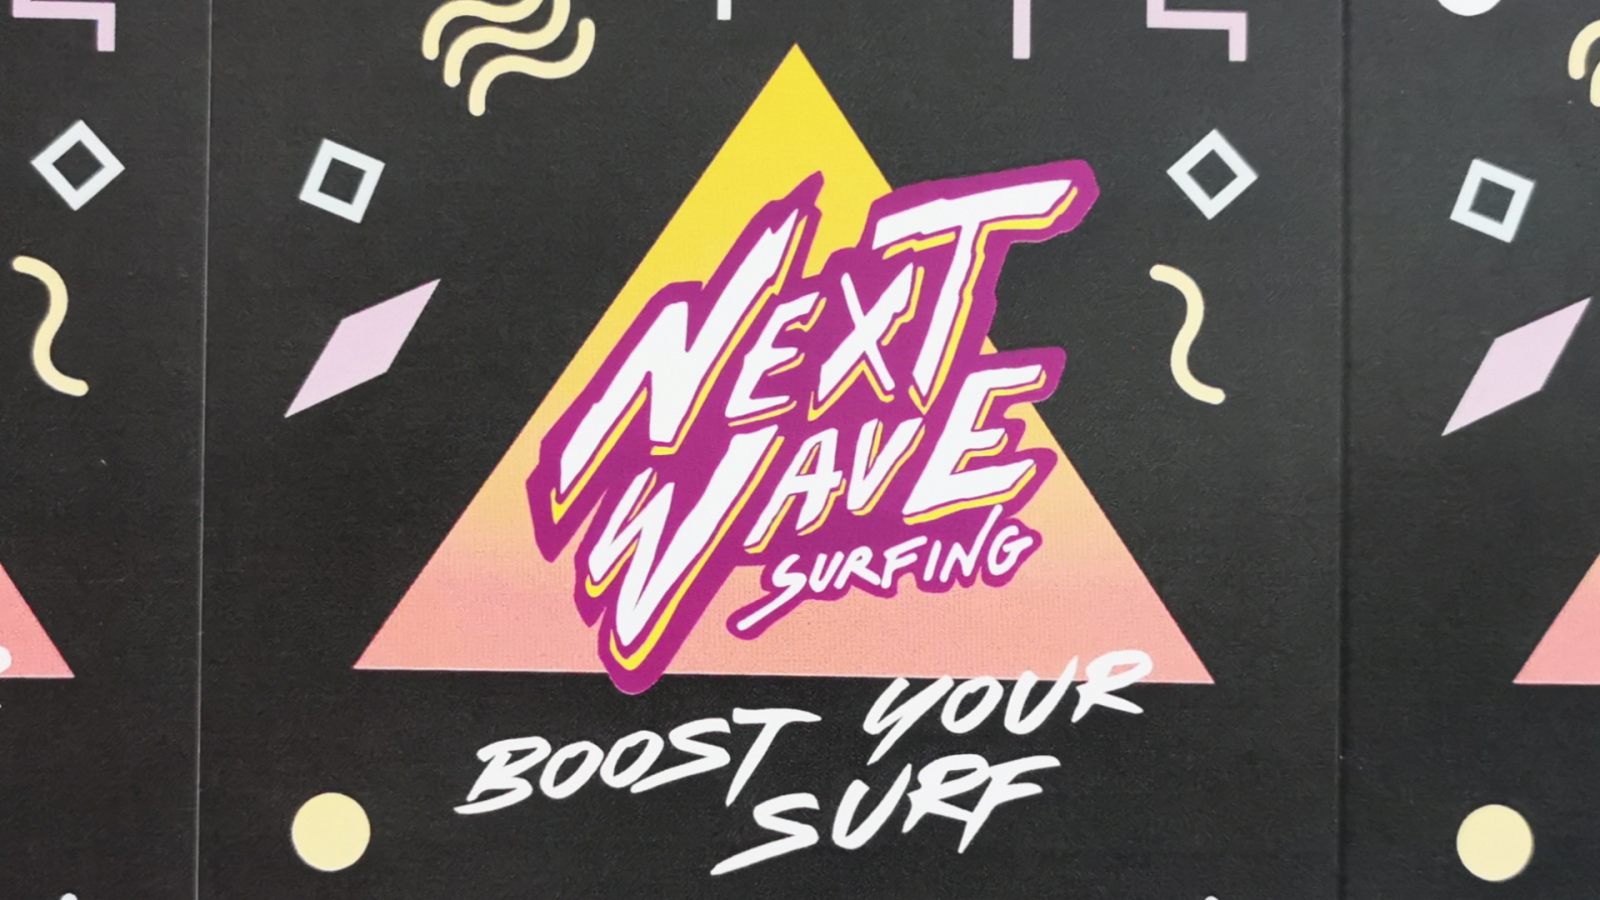 La próxima ola de surf